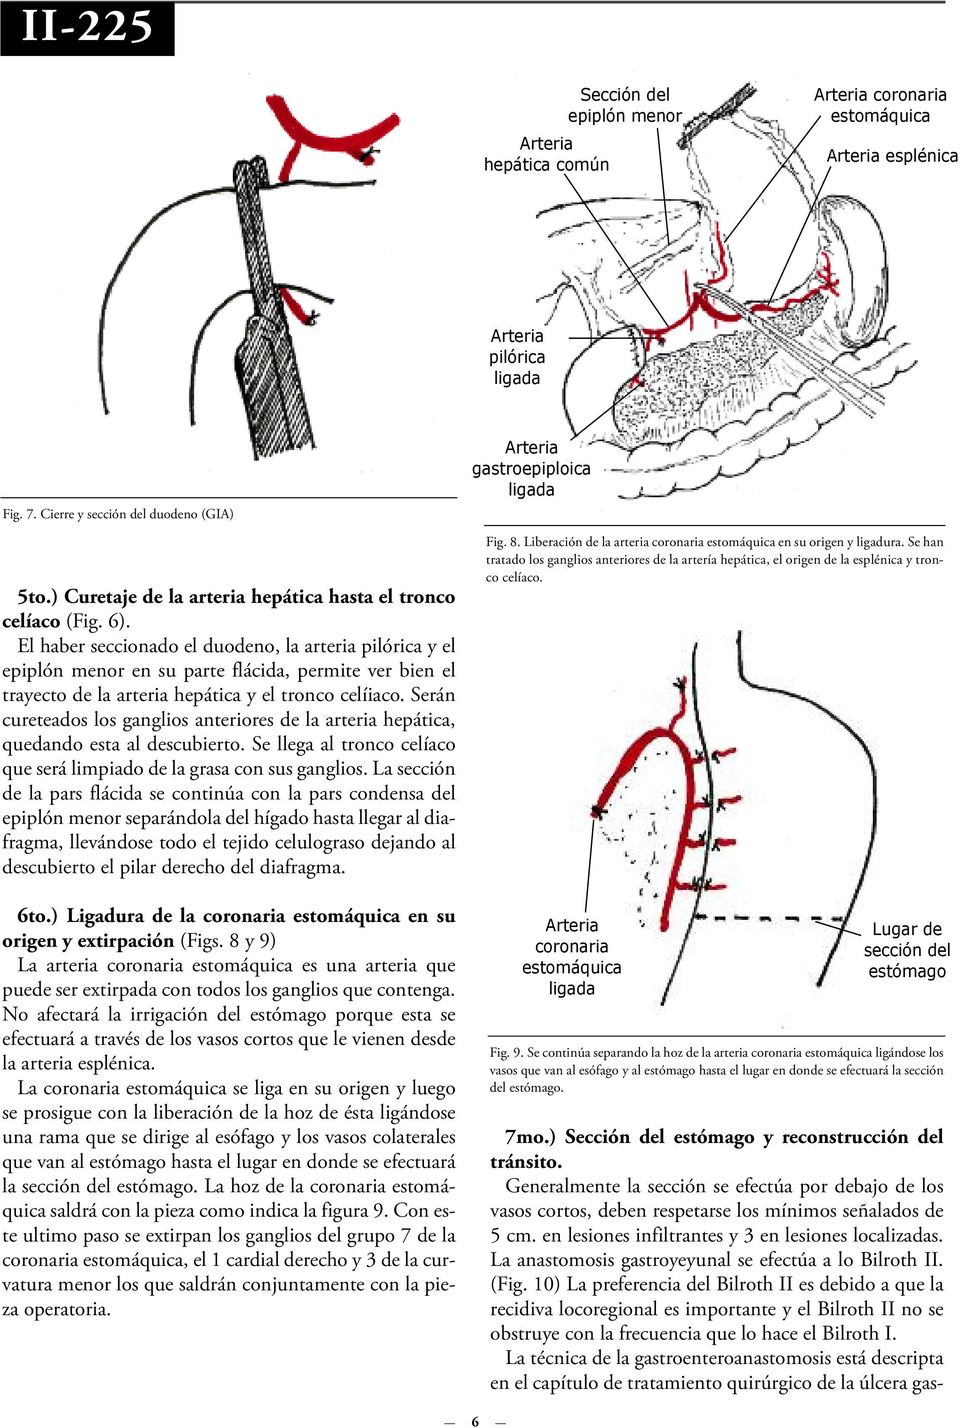 El haber seccionado el duodeno, la arteria pilórica y el epiplón menor en su parte flácida, permite ver bien el trayecto de la arteria hepática y el tronco celíiaco.